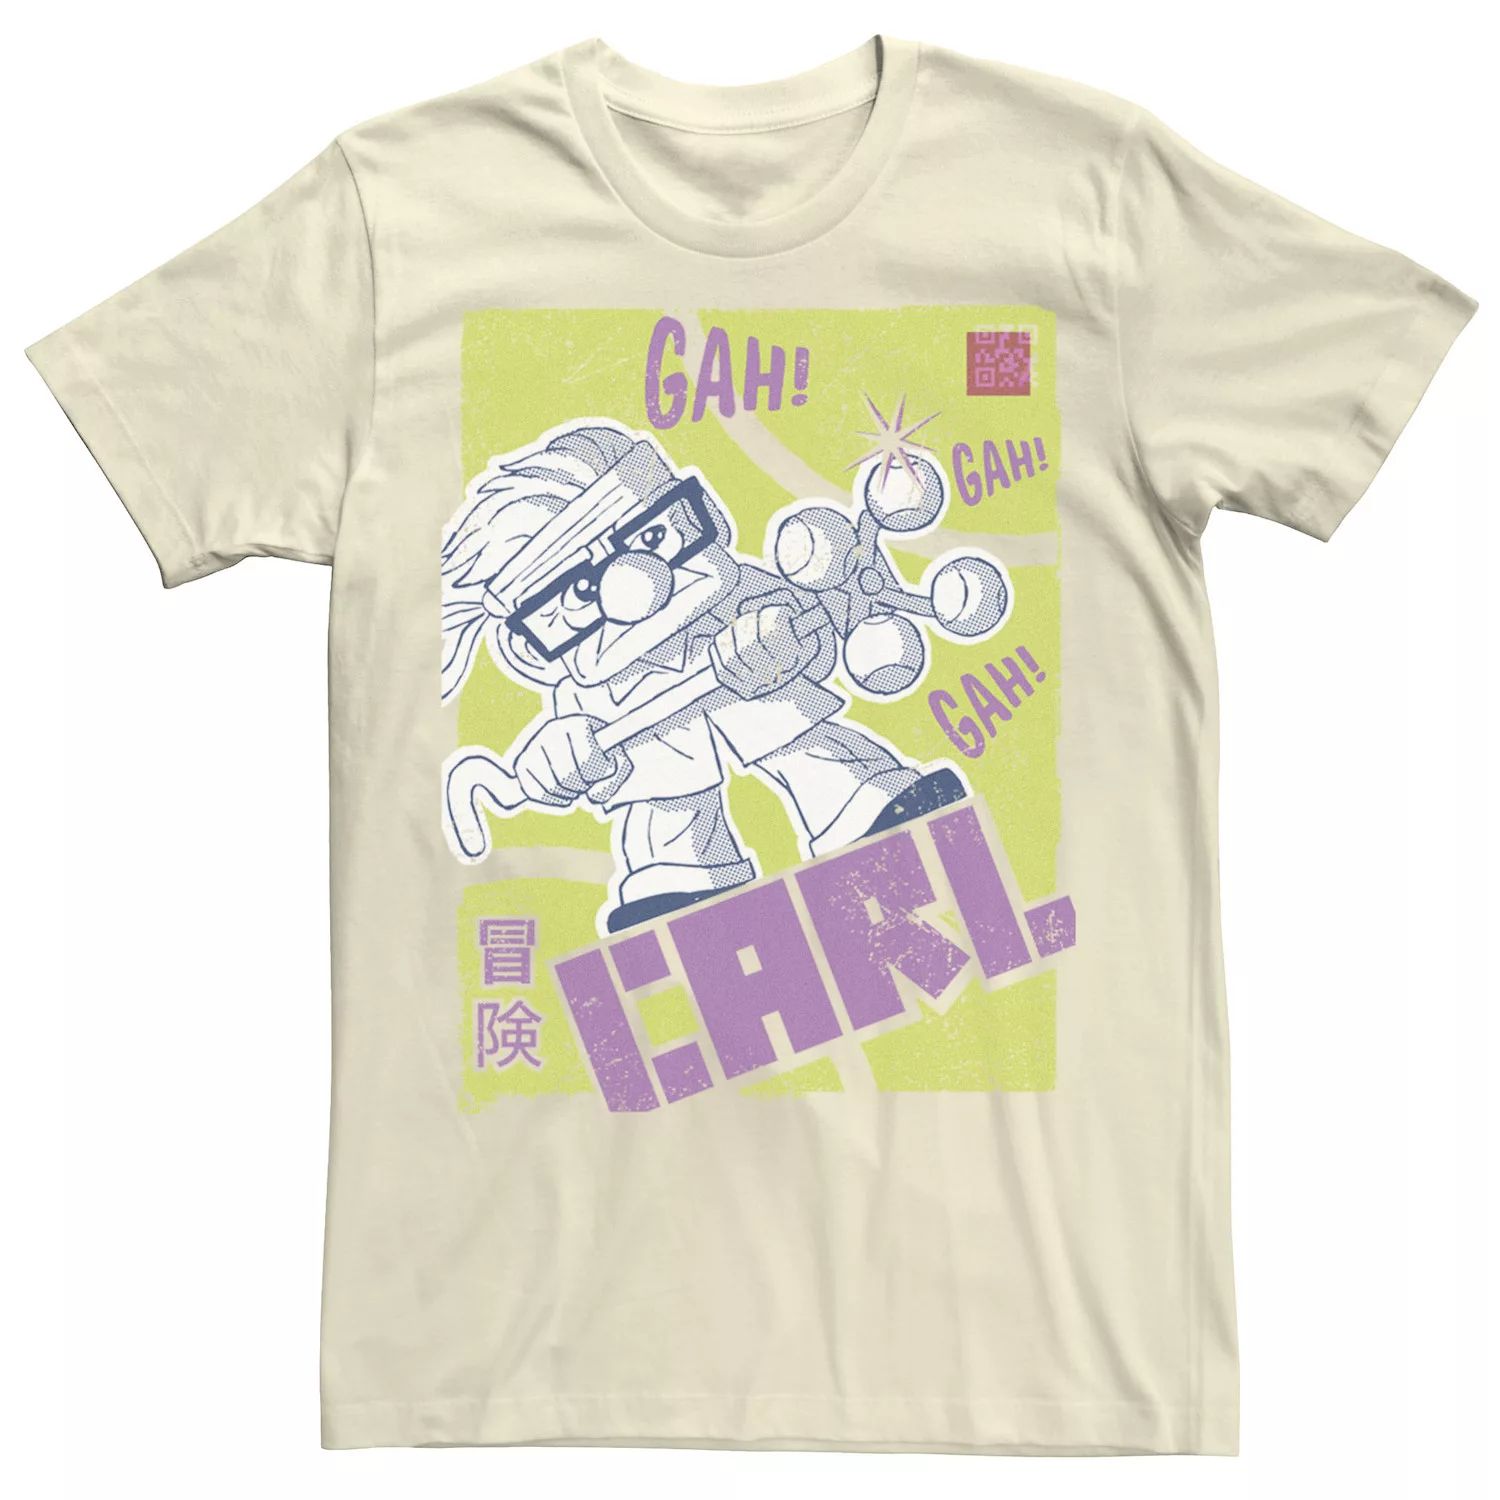 Мужская футболка с плакатом Disney/Pixar Carl Kanji Licensed Character мужская толстовка с капюшоном disney pixar up carl and ellie love licensed character